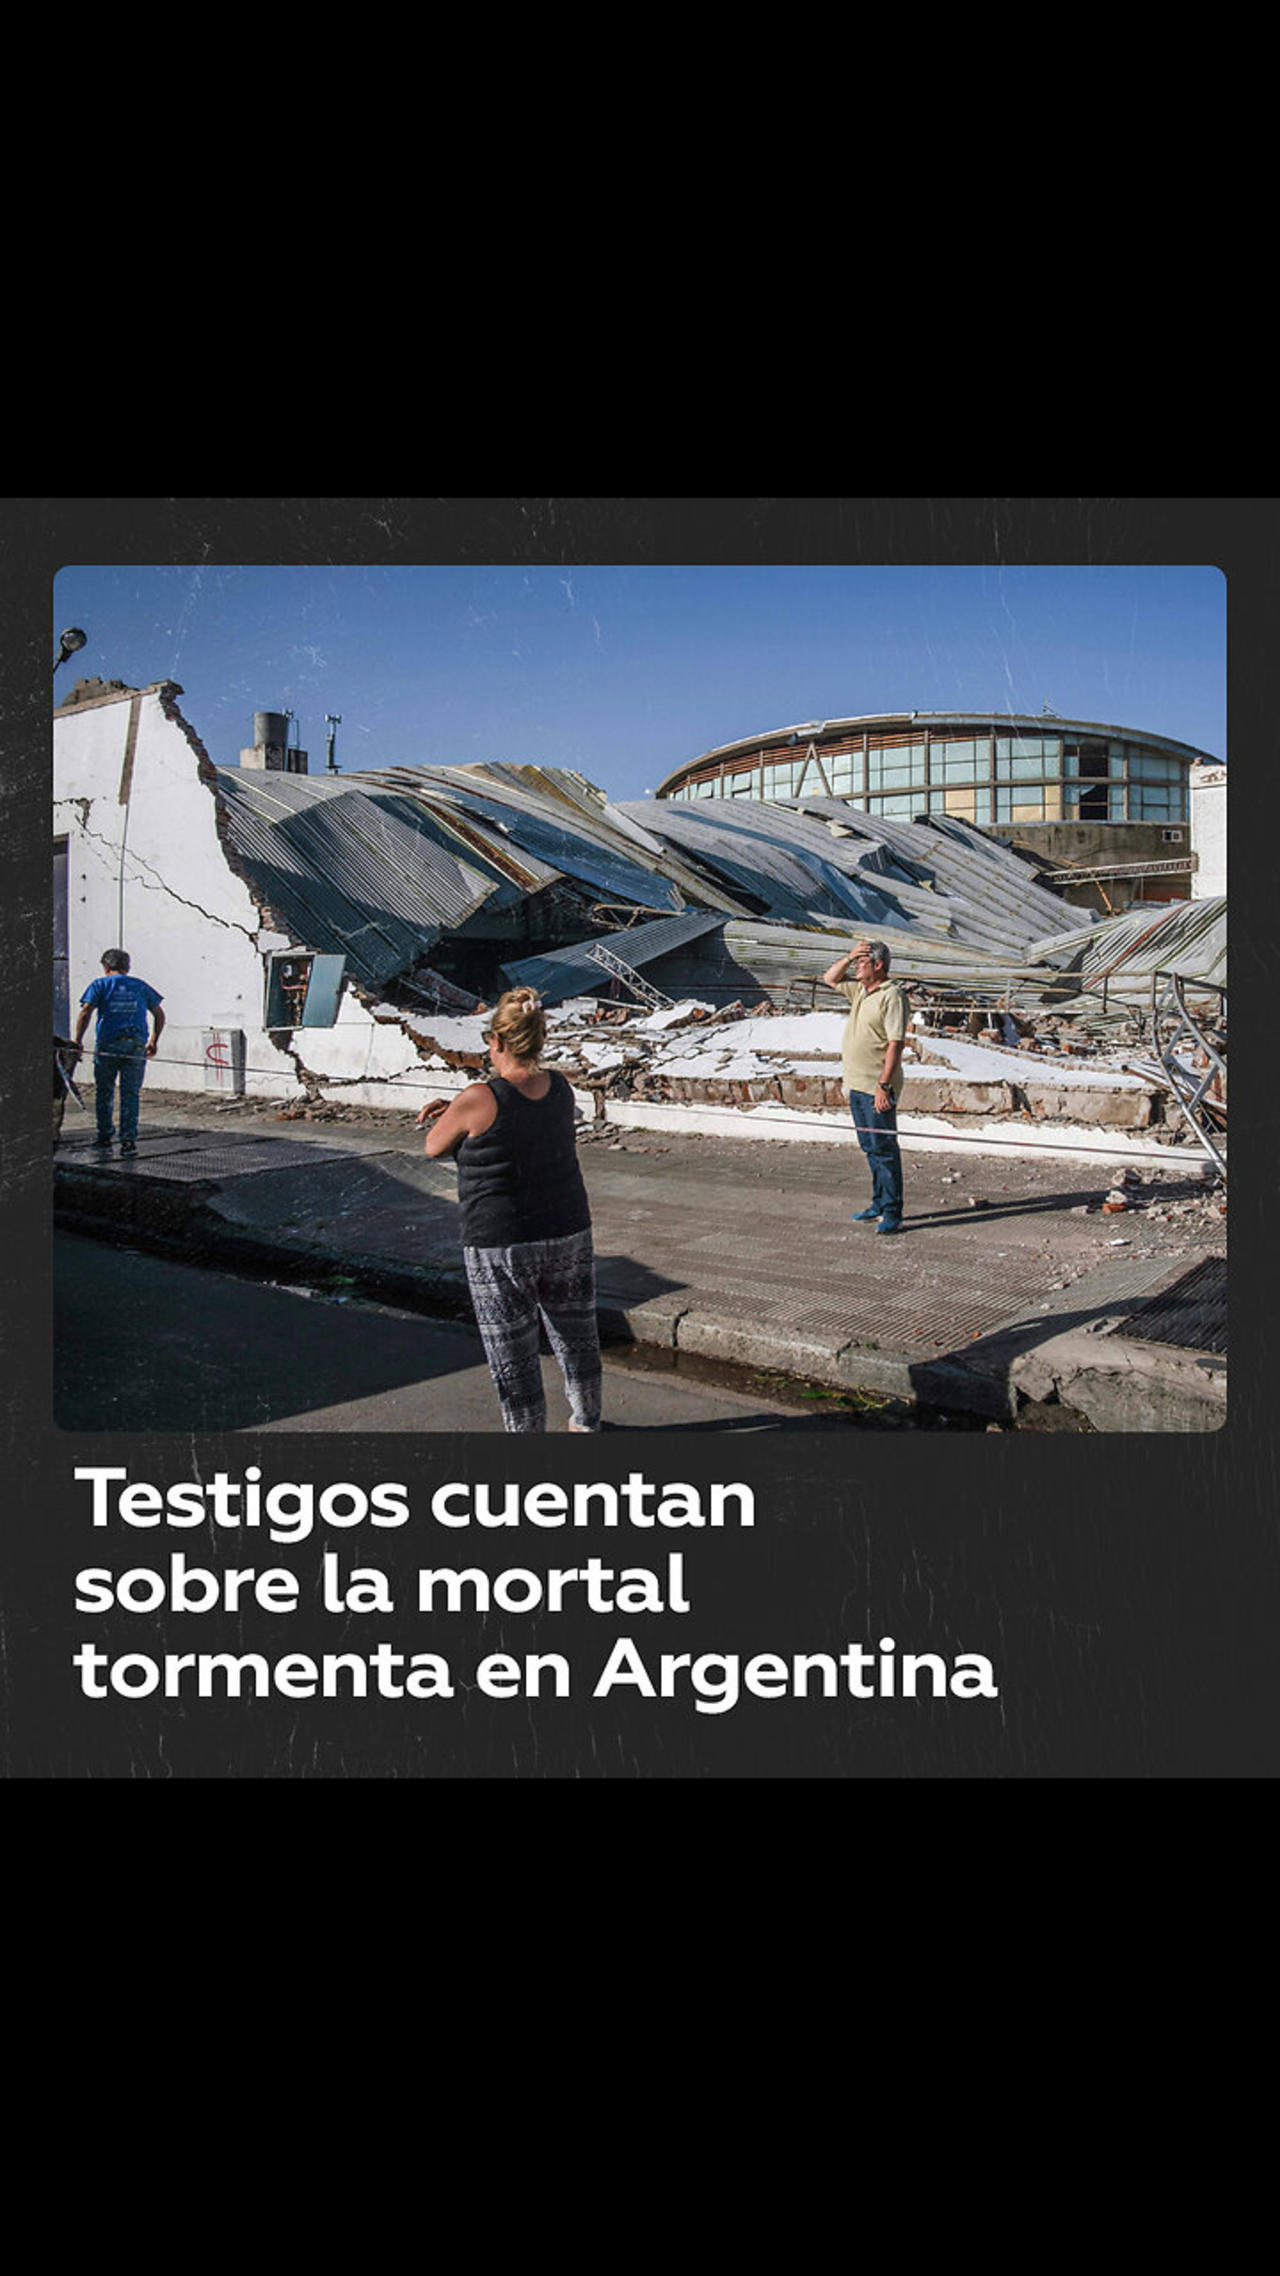 “Dos horas de una película de terror”: Testigos cuentan sobre la mortal tormenta en Argentina